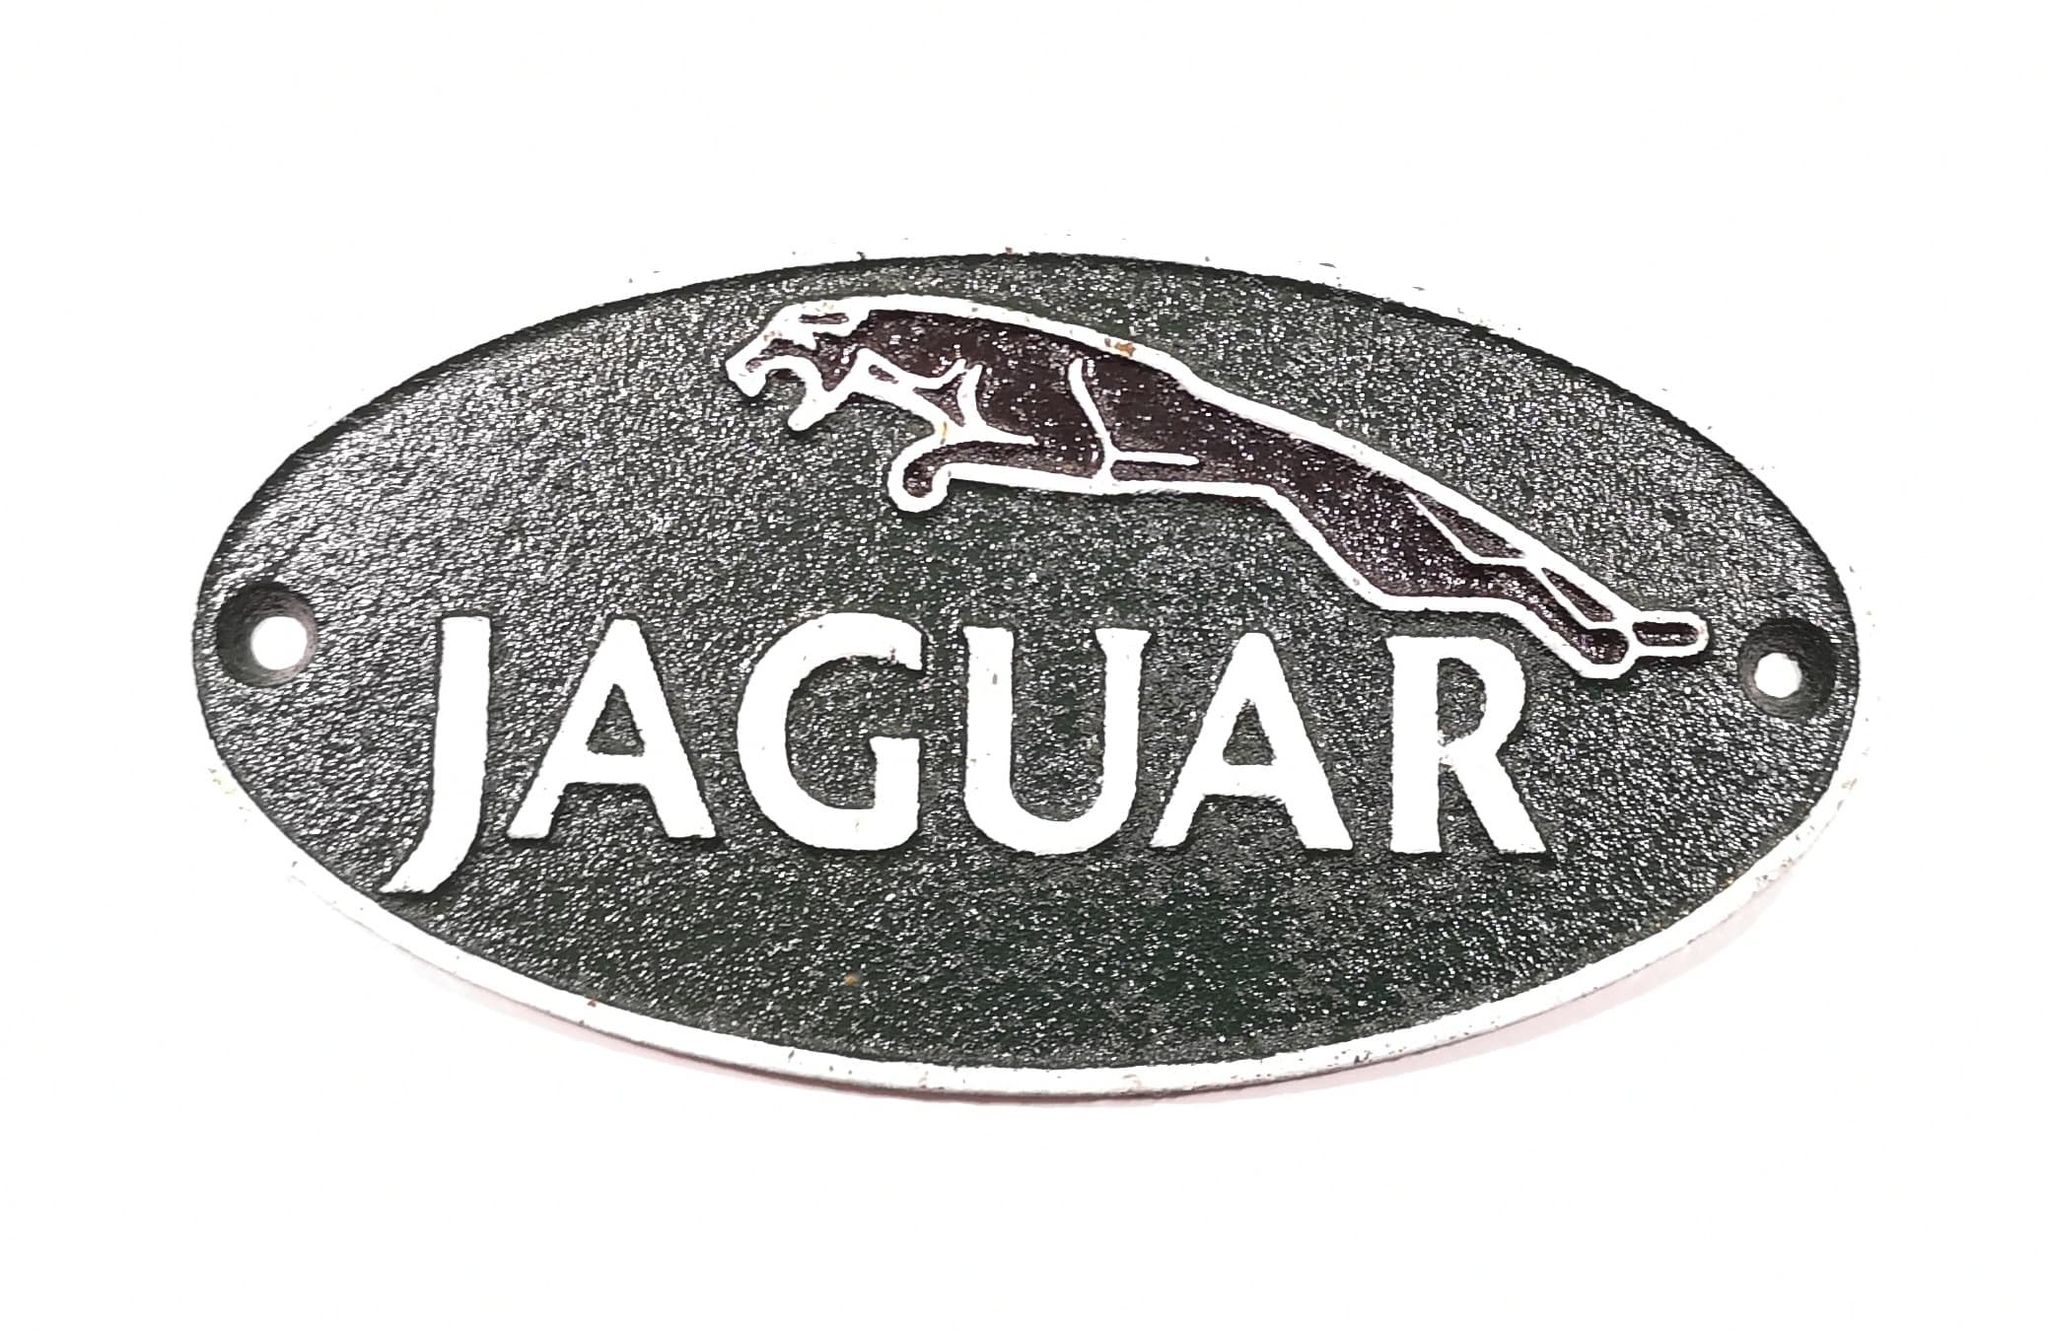 Jaguar Leaping Cast Iron Vintage Garage Advertising Wall Plaque Sign 18cm x 9cm